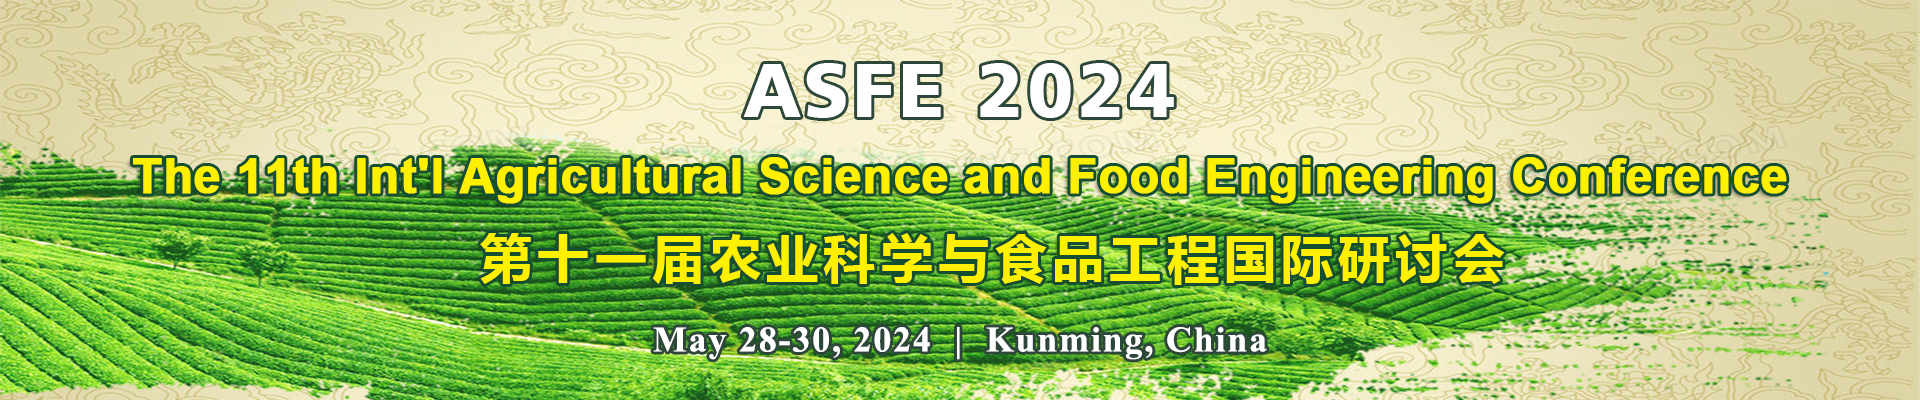 第十一届农业科学与食品工程国际研讨会(ASFE 2024)